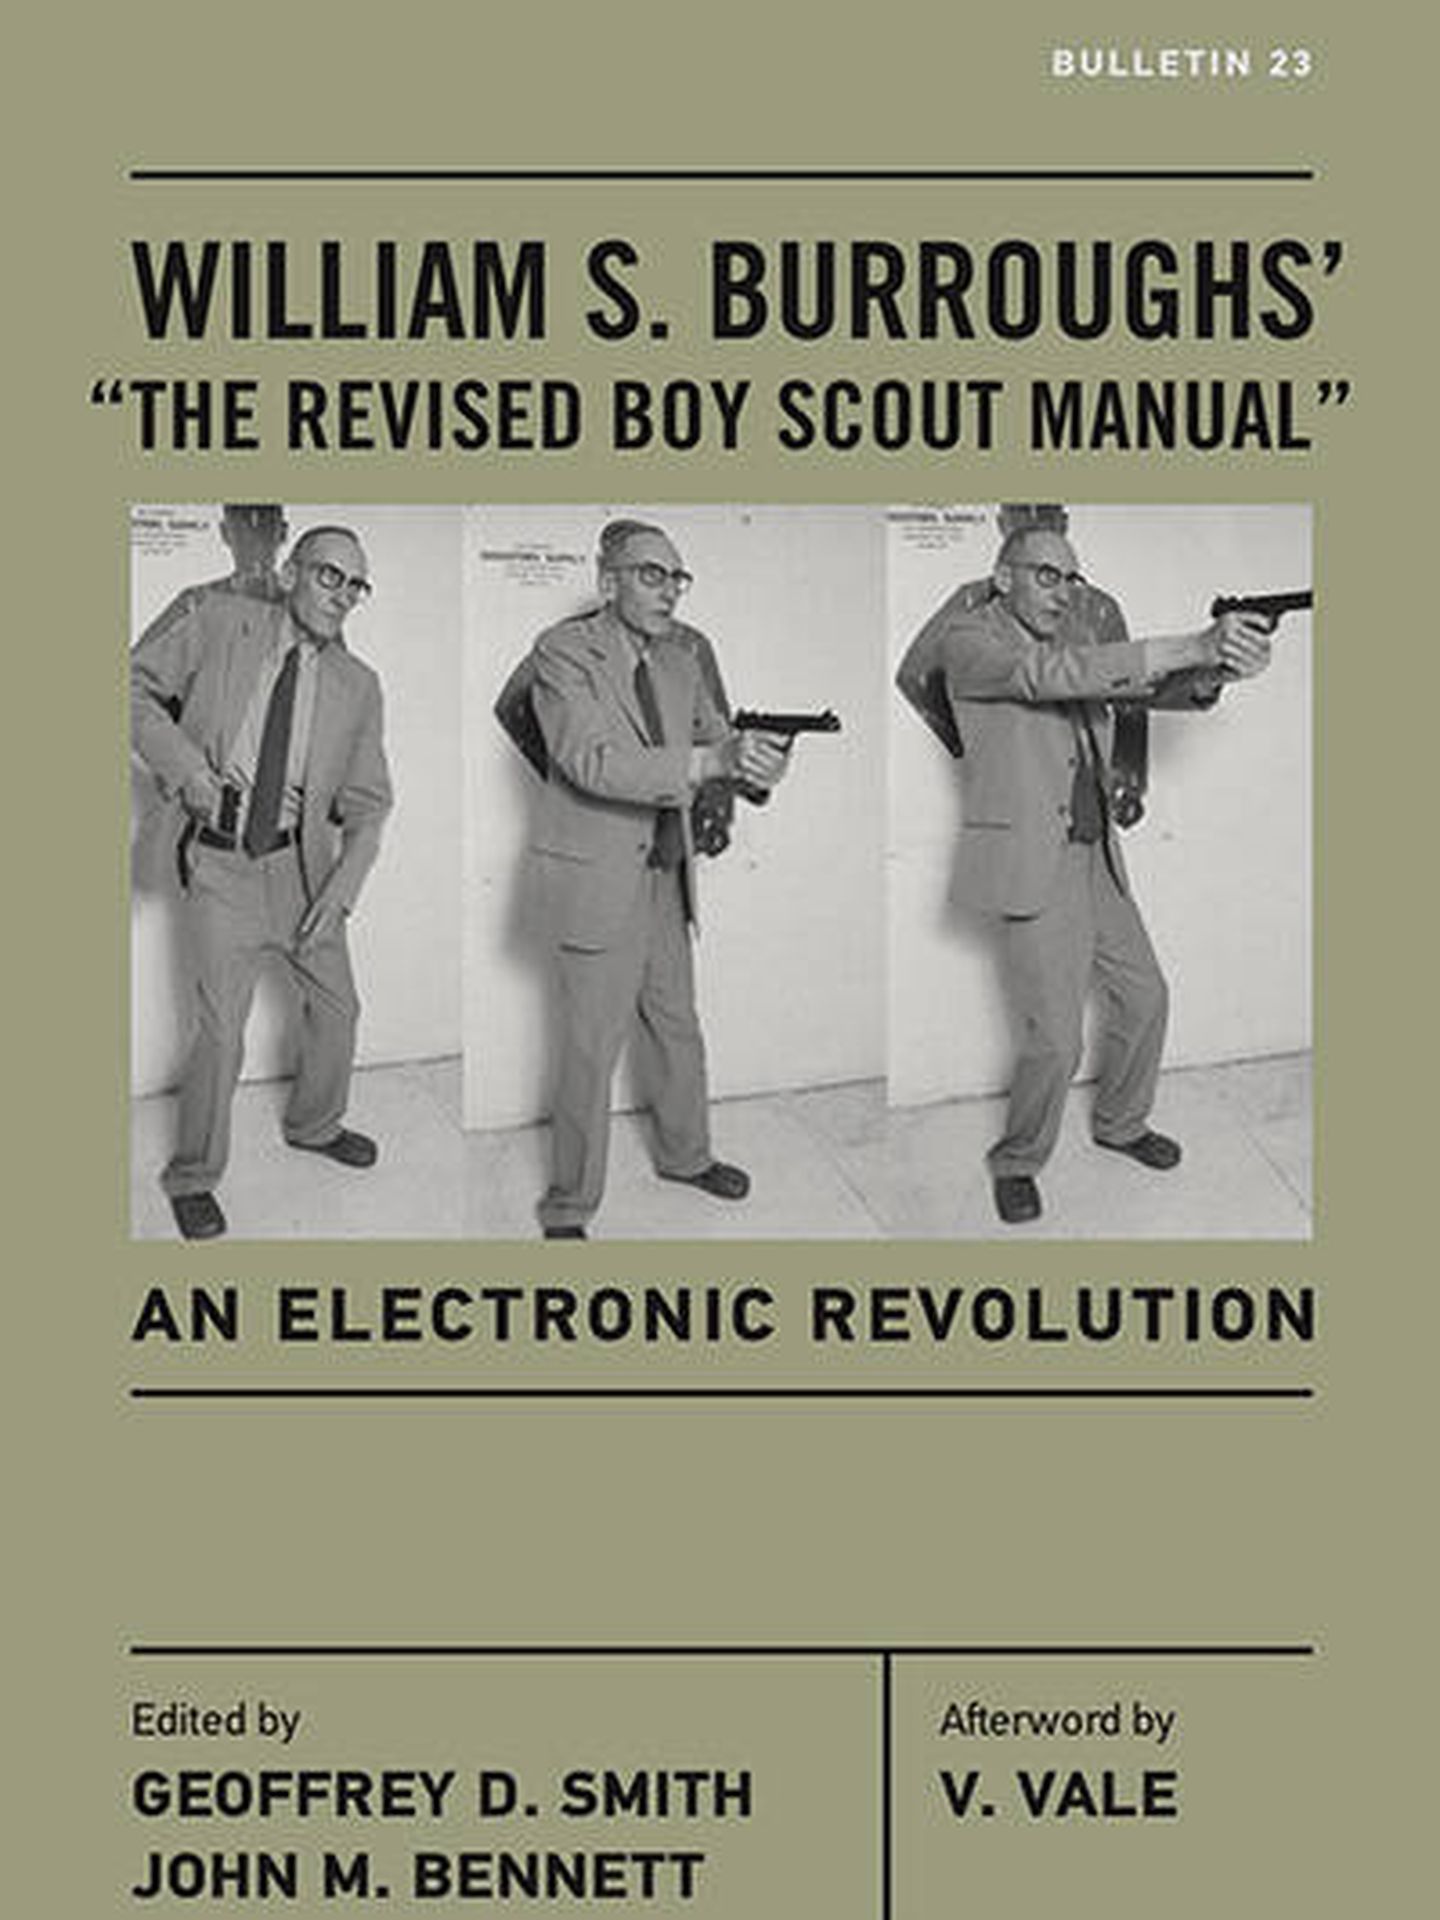 Portada de la edición anglosajona del 'Manual revisado del Boy Scout' seguido de 'La revolución electrónica' en la edición de The Ohio State University Press, 2017.